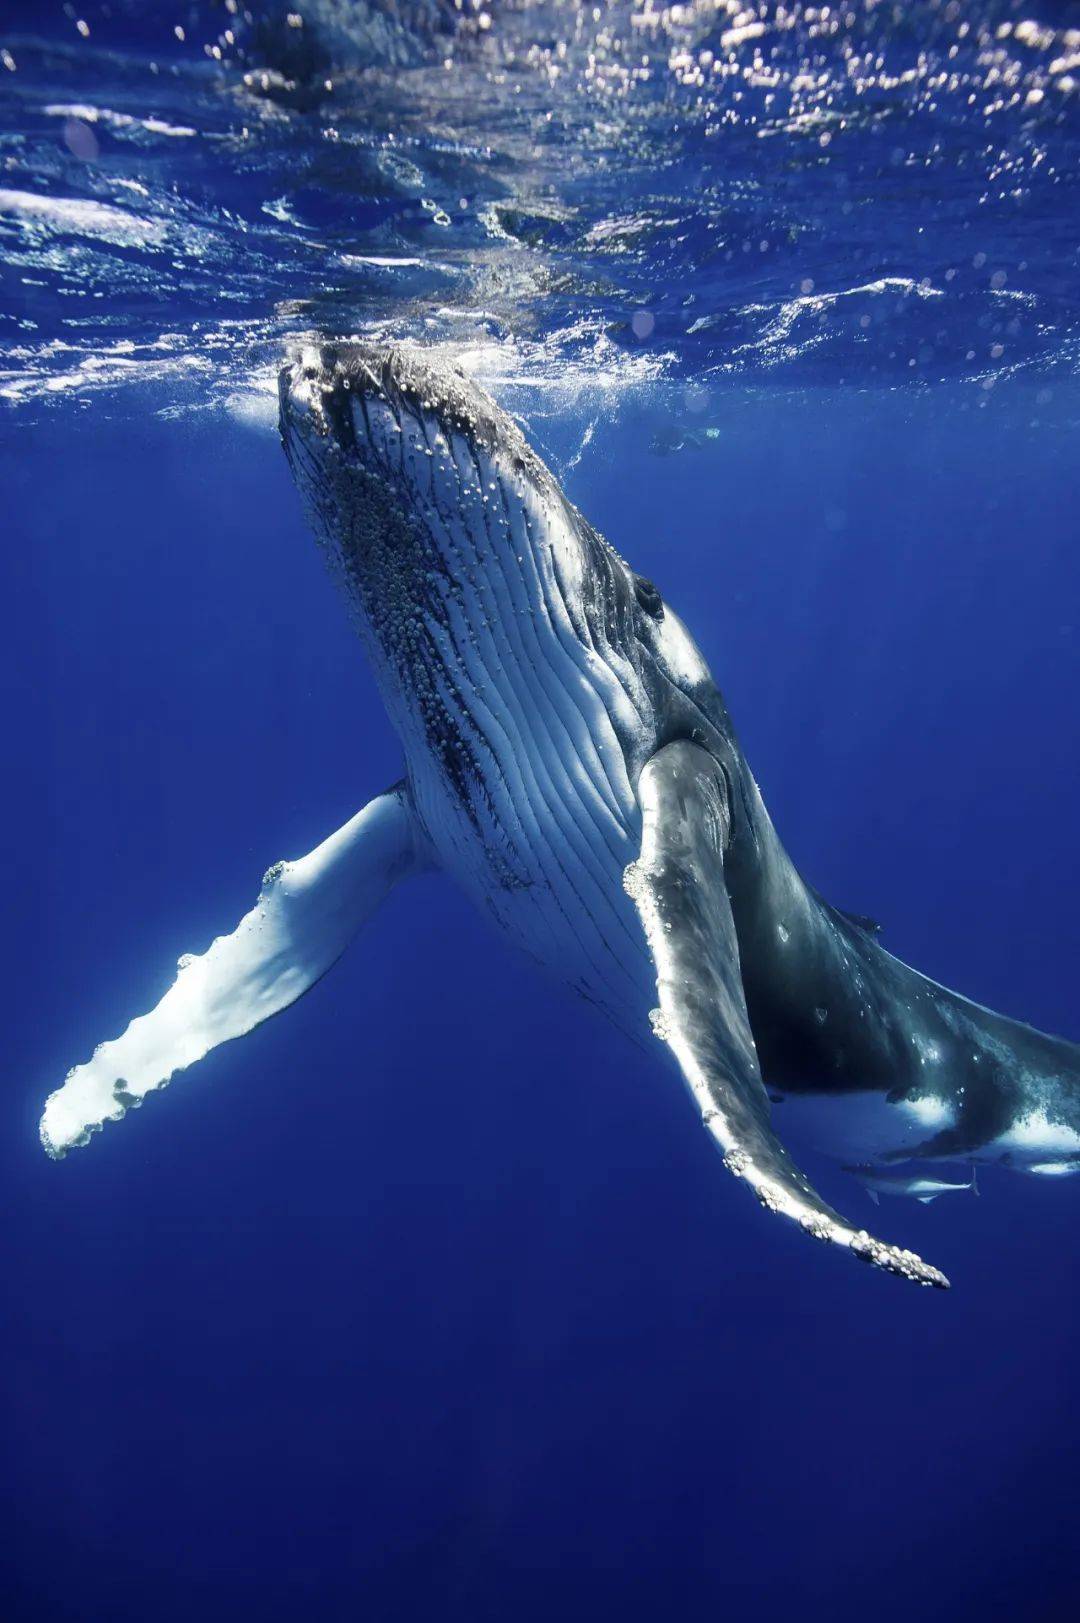 蓝鲸有多大航母比较图图片